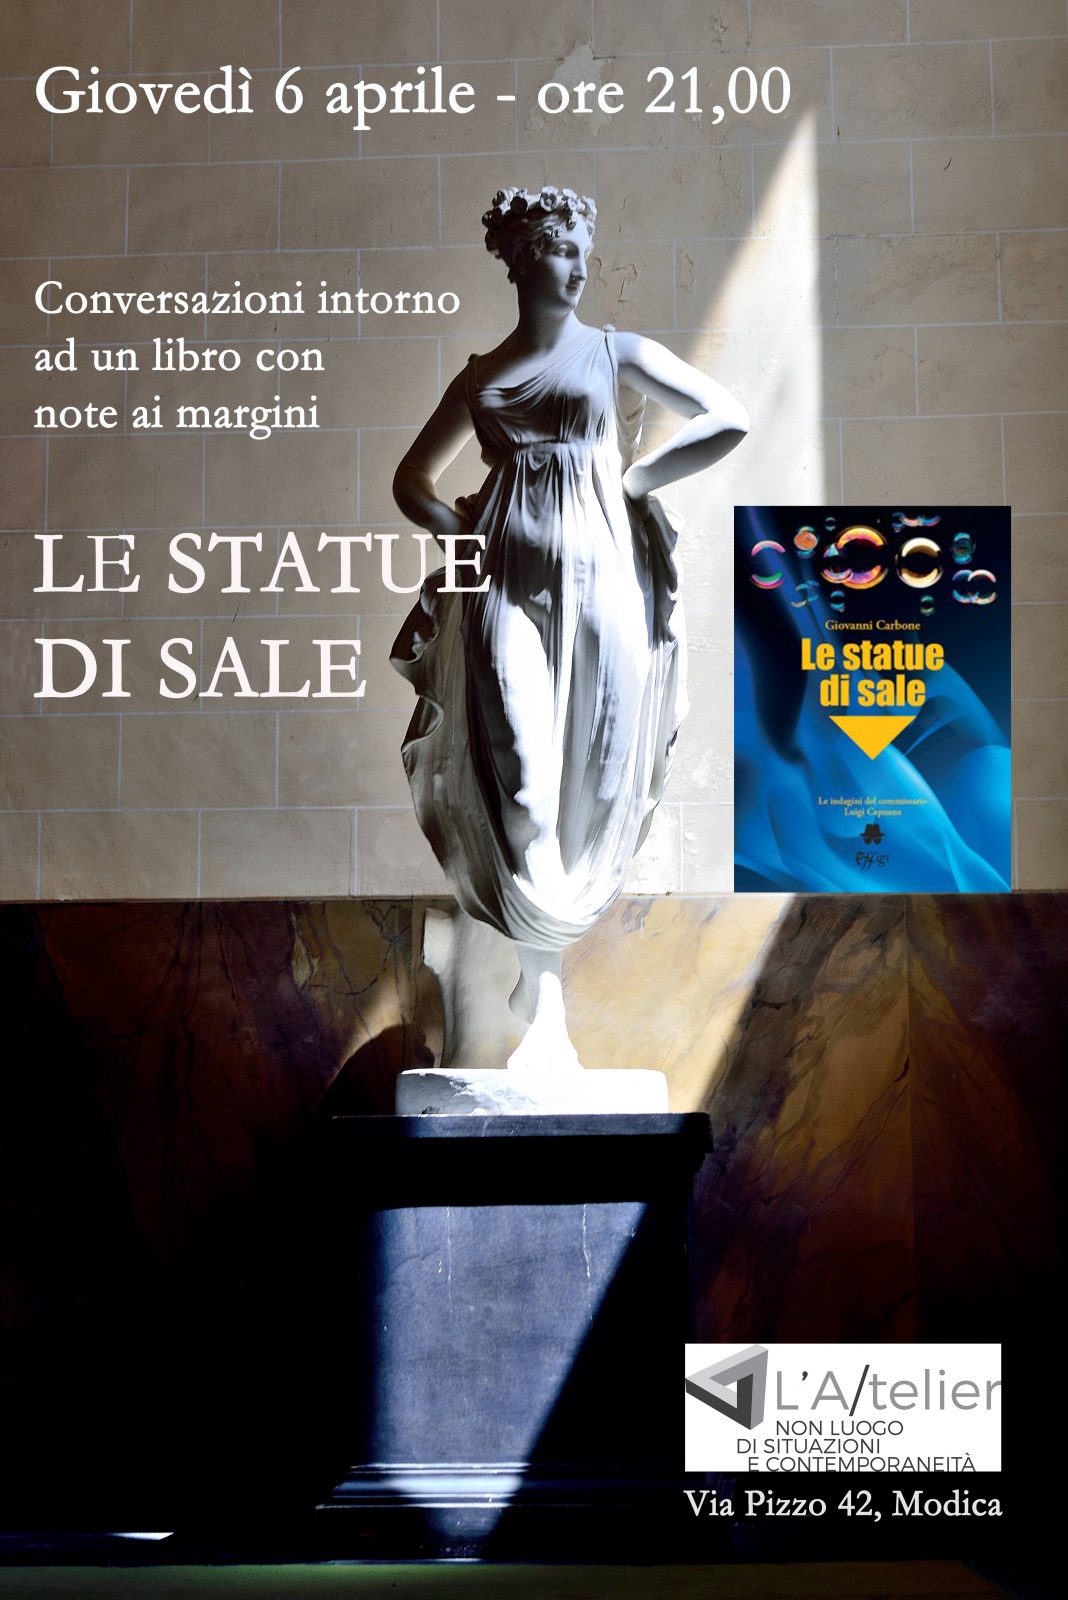 Le Statue Di Salehttps://www.exibart.com/repository/media/formidable/11/img/453/Presentazione-le-statue-di-sale-1068x1600.jpeg